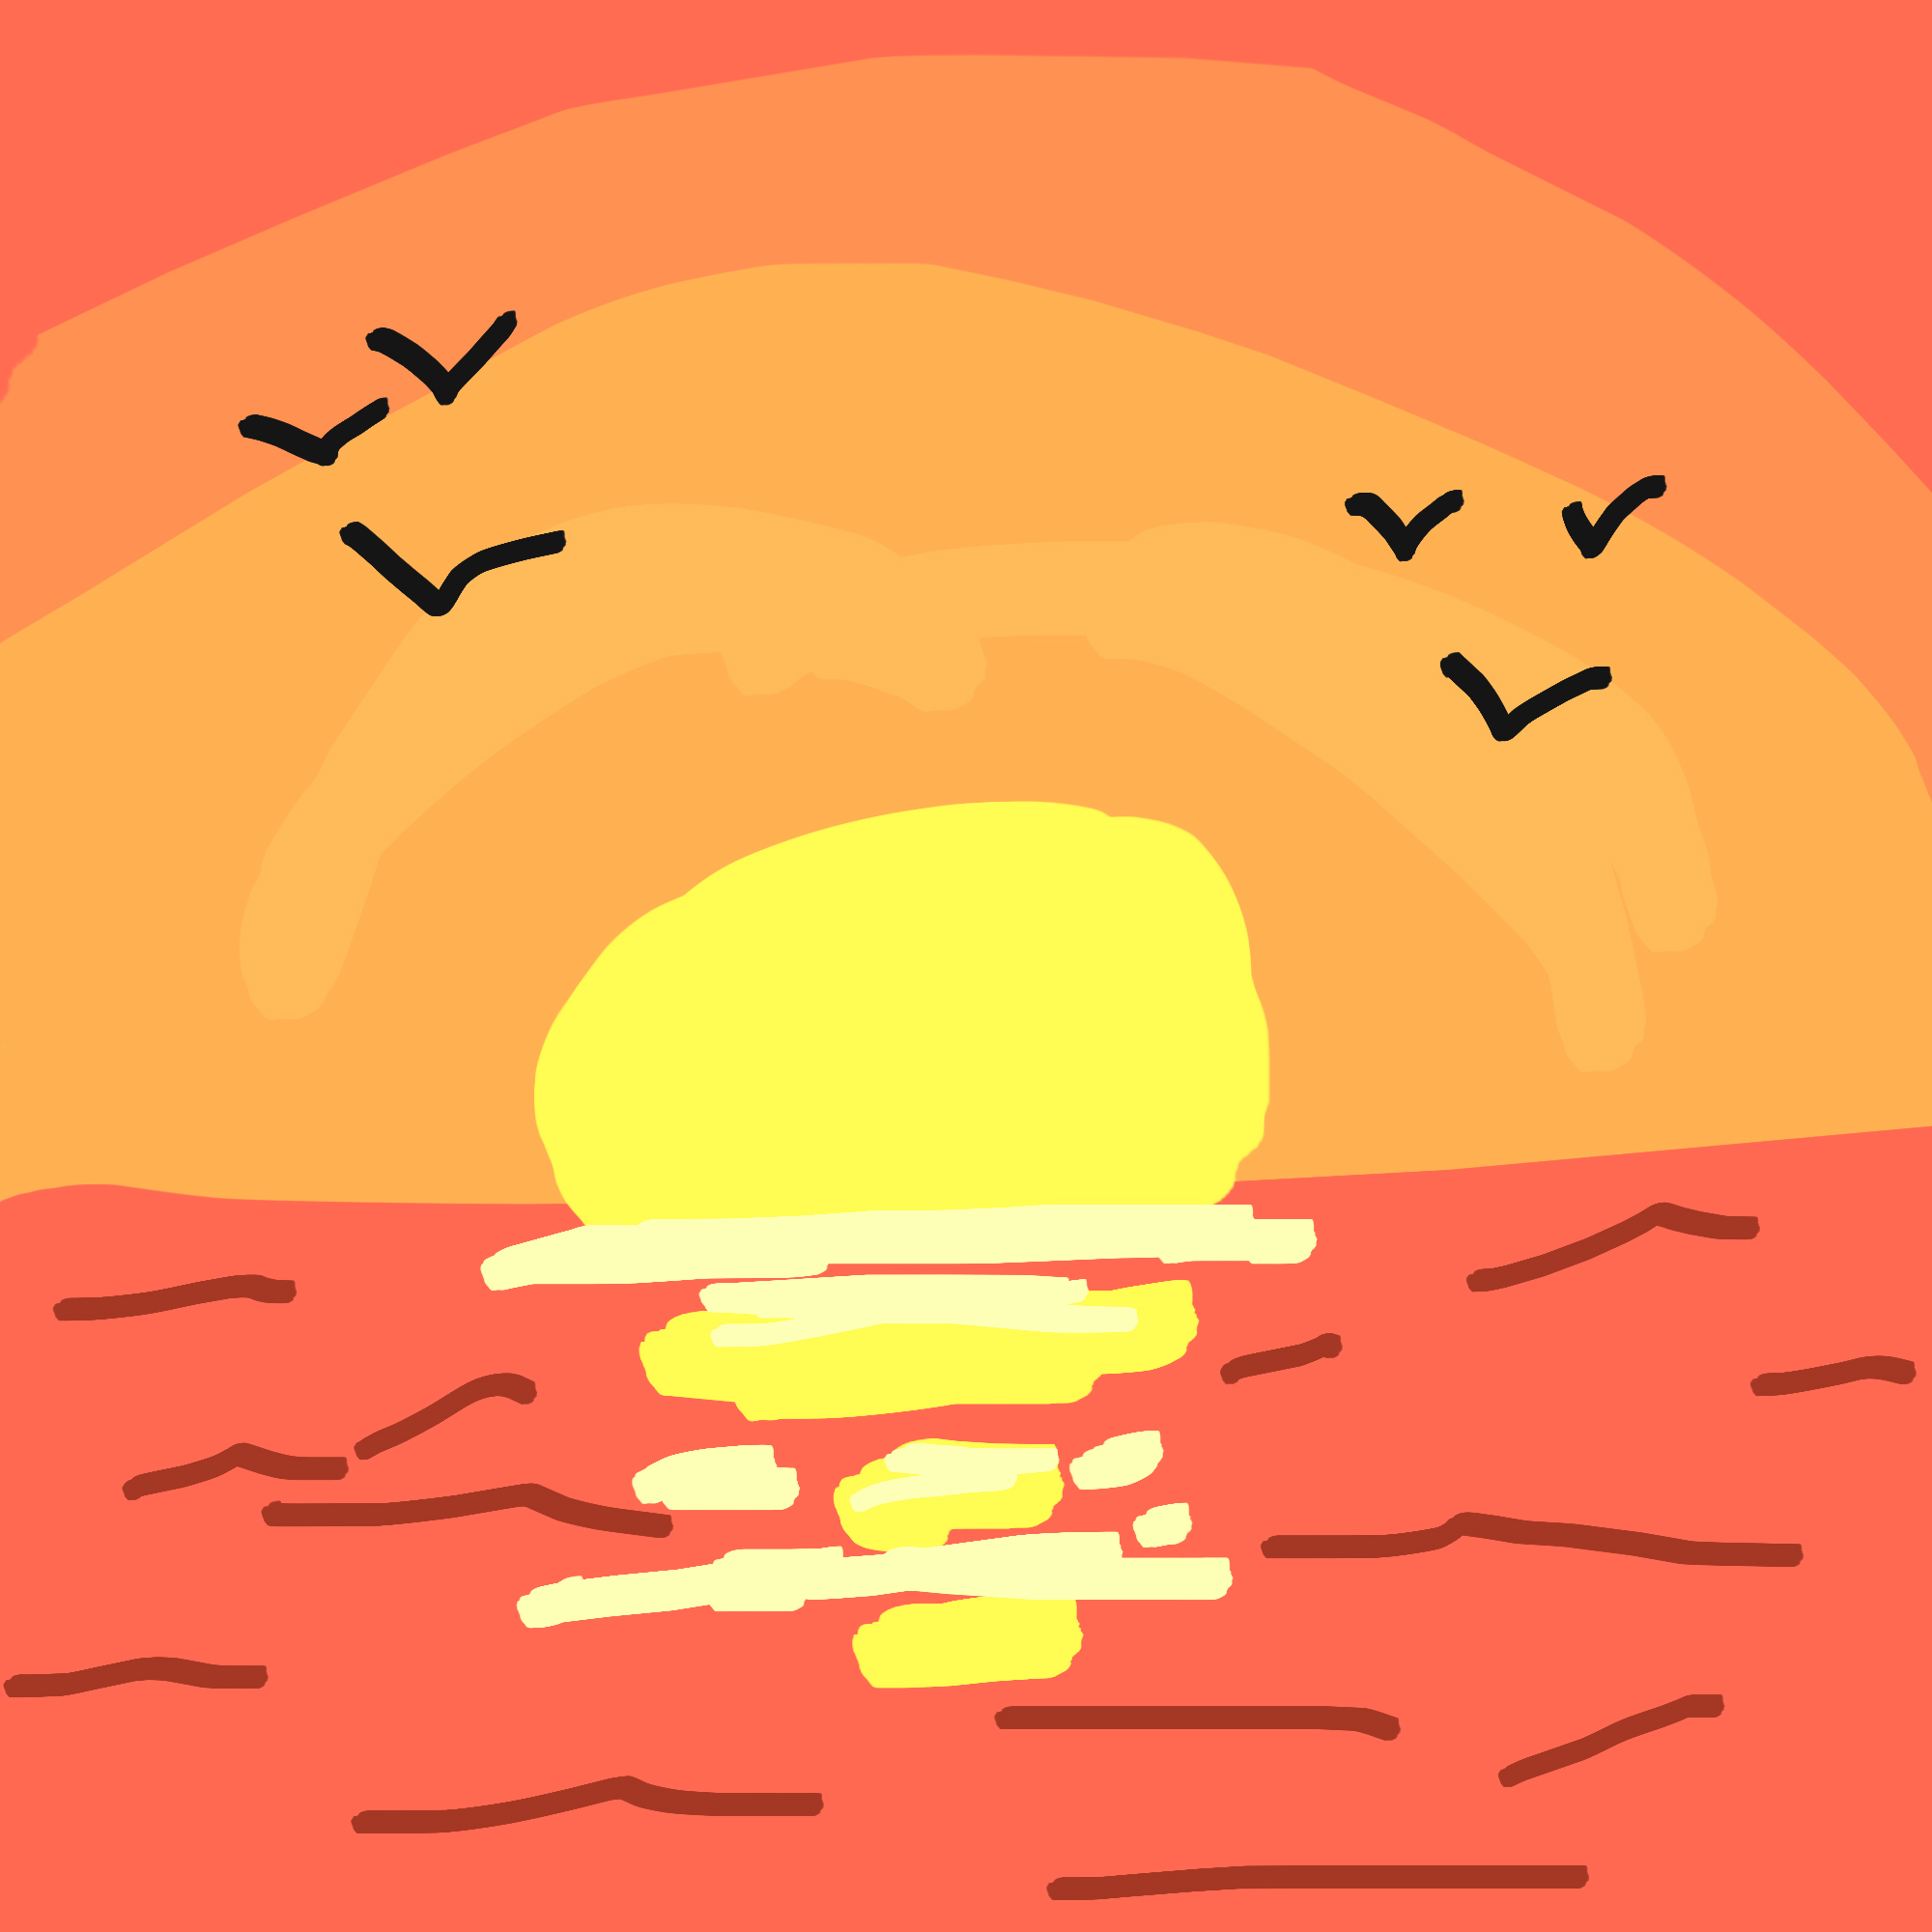 Un coucher de soleil aux couleurs enflammées se reflétant sur l'océan à l'horizon, tandis que les
       silhouettes d'oiseaux gracieux déchirent le ciel.